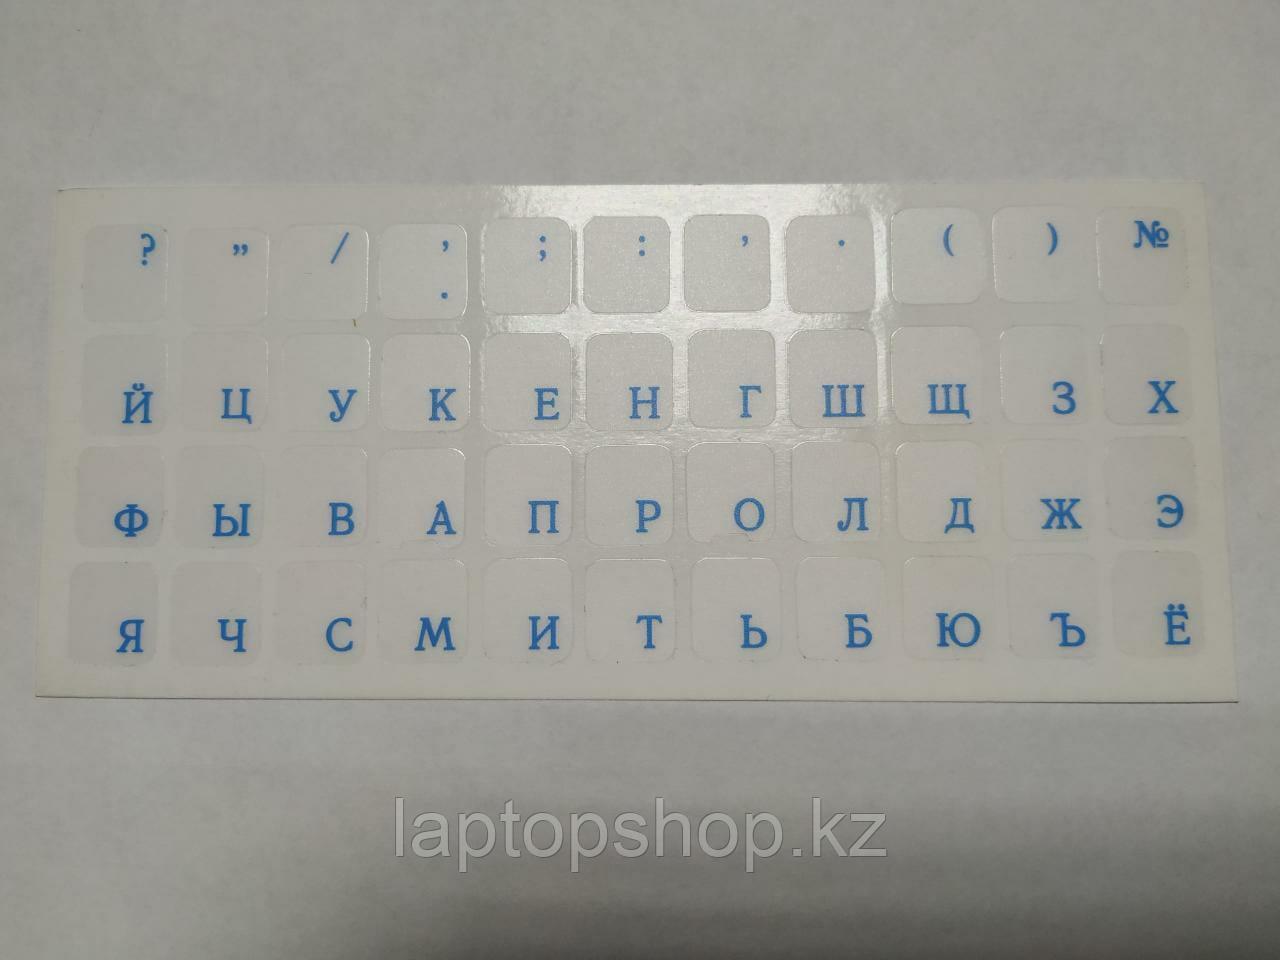 Наклейки на клавиатуру не стираемые прозрачные (краска ПОД ПЛЕНКОЙ) - синий